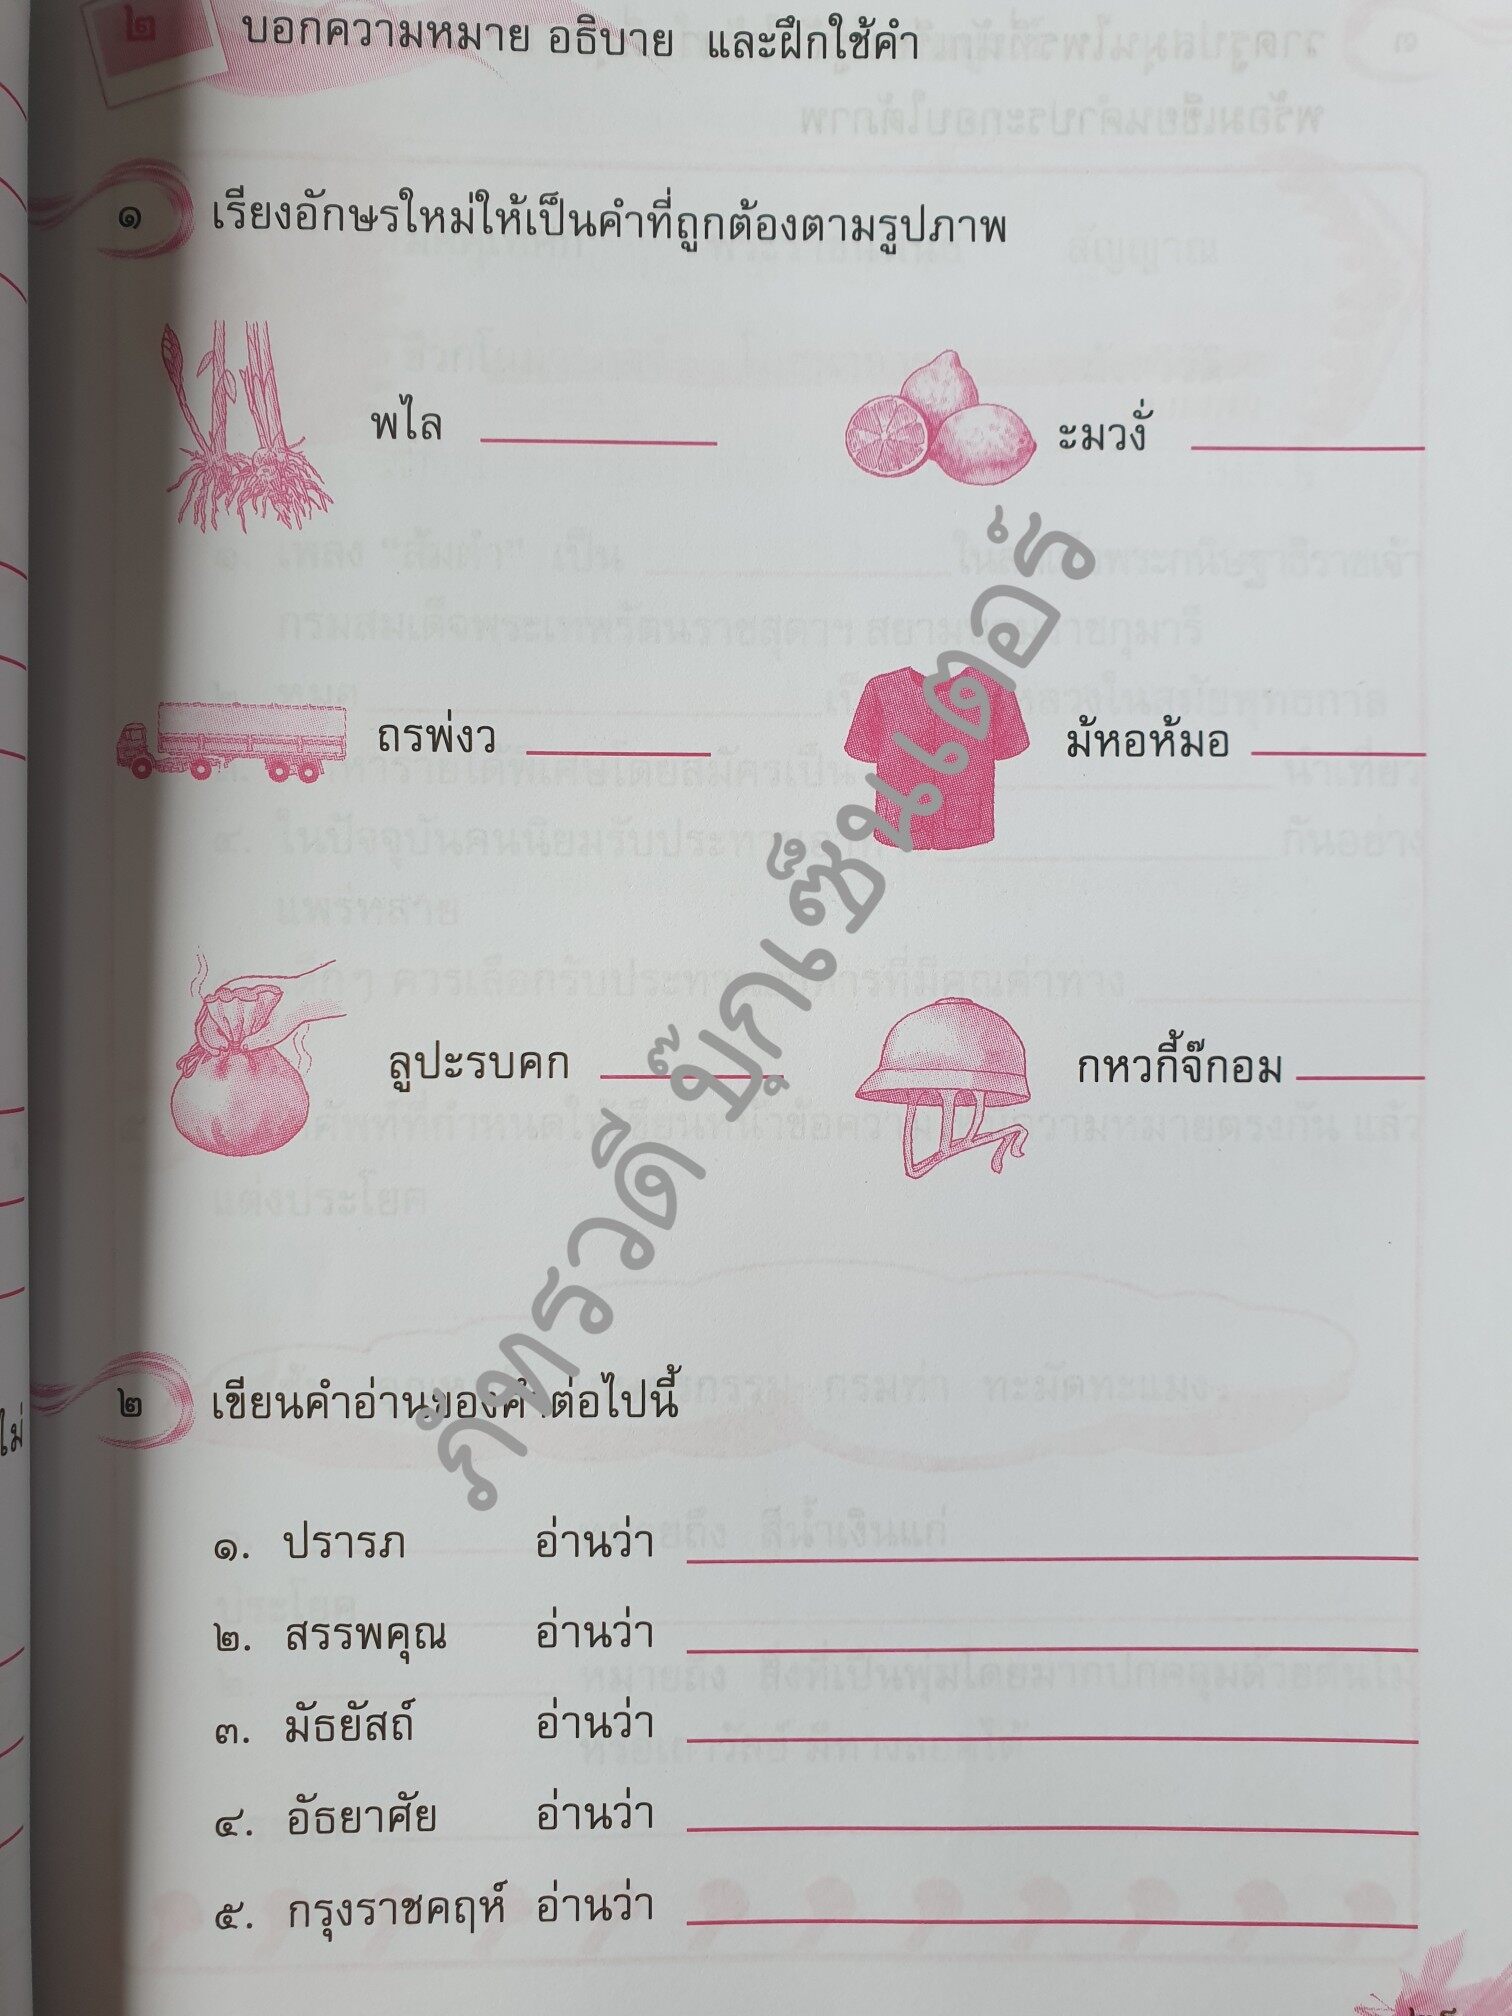 แบบฝึกหัดทักษะภาษา รายวิชาพื้นฐานภาษาไทย ชุดภาษาเพื่อชีวิต ป.4 |  Lazada.Co.Th